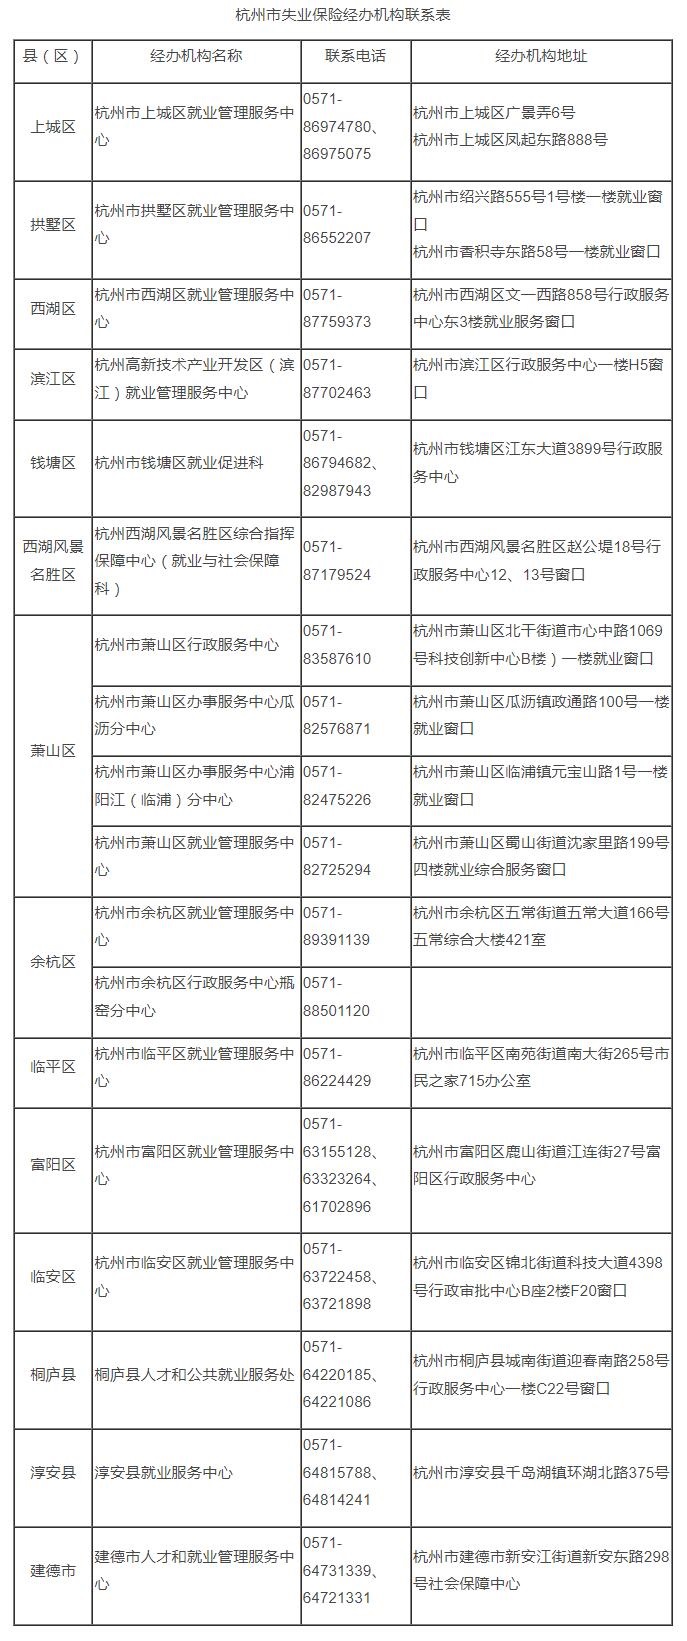 杭州市失业保险经办机构联系表